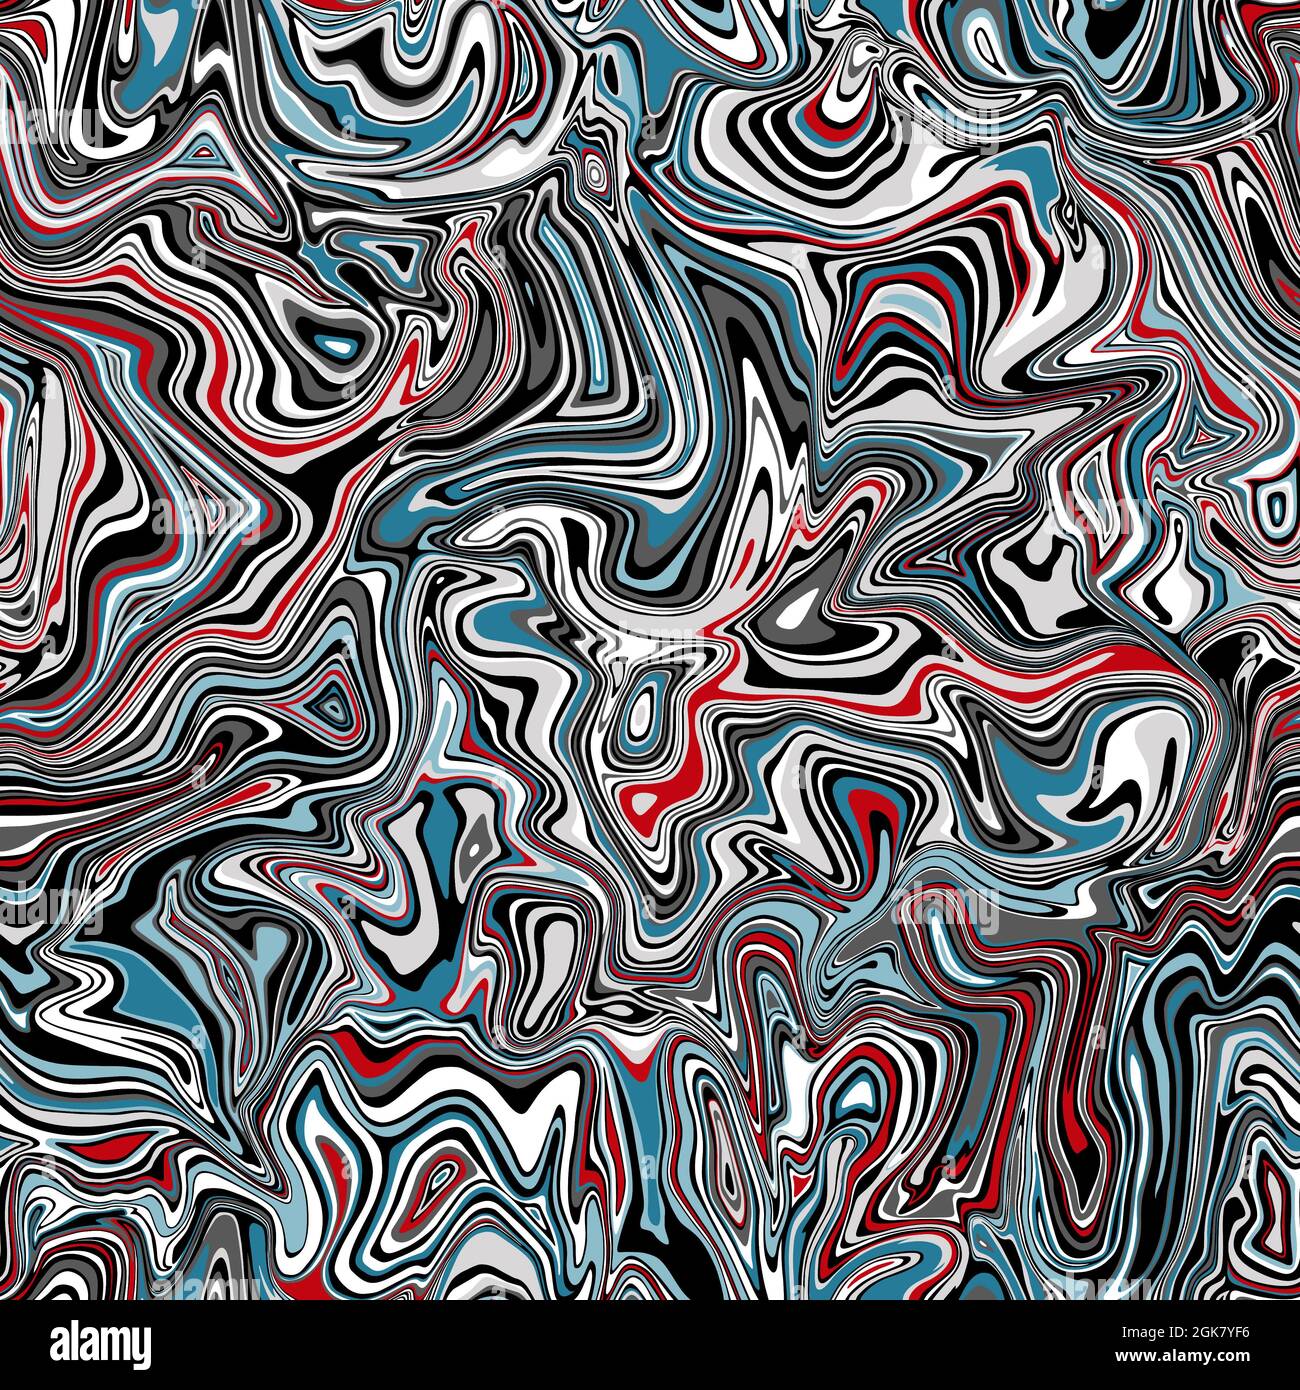 Coloratissimo liquido astratto vortice in blu, rosso, bianco e grigio con effetto marmo. Ripetizione continua. Foto Stock